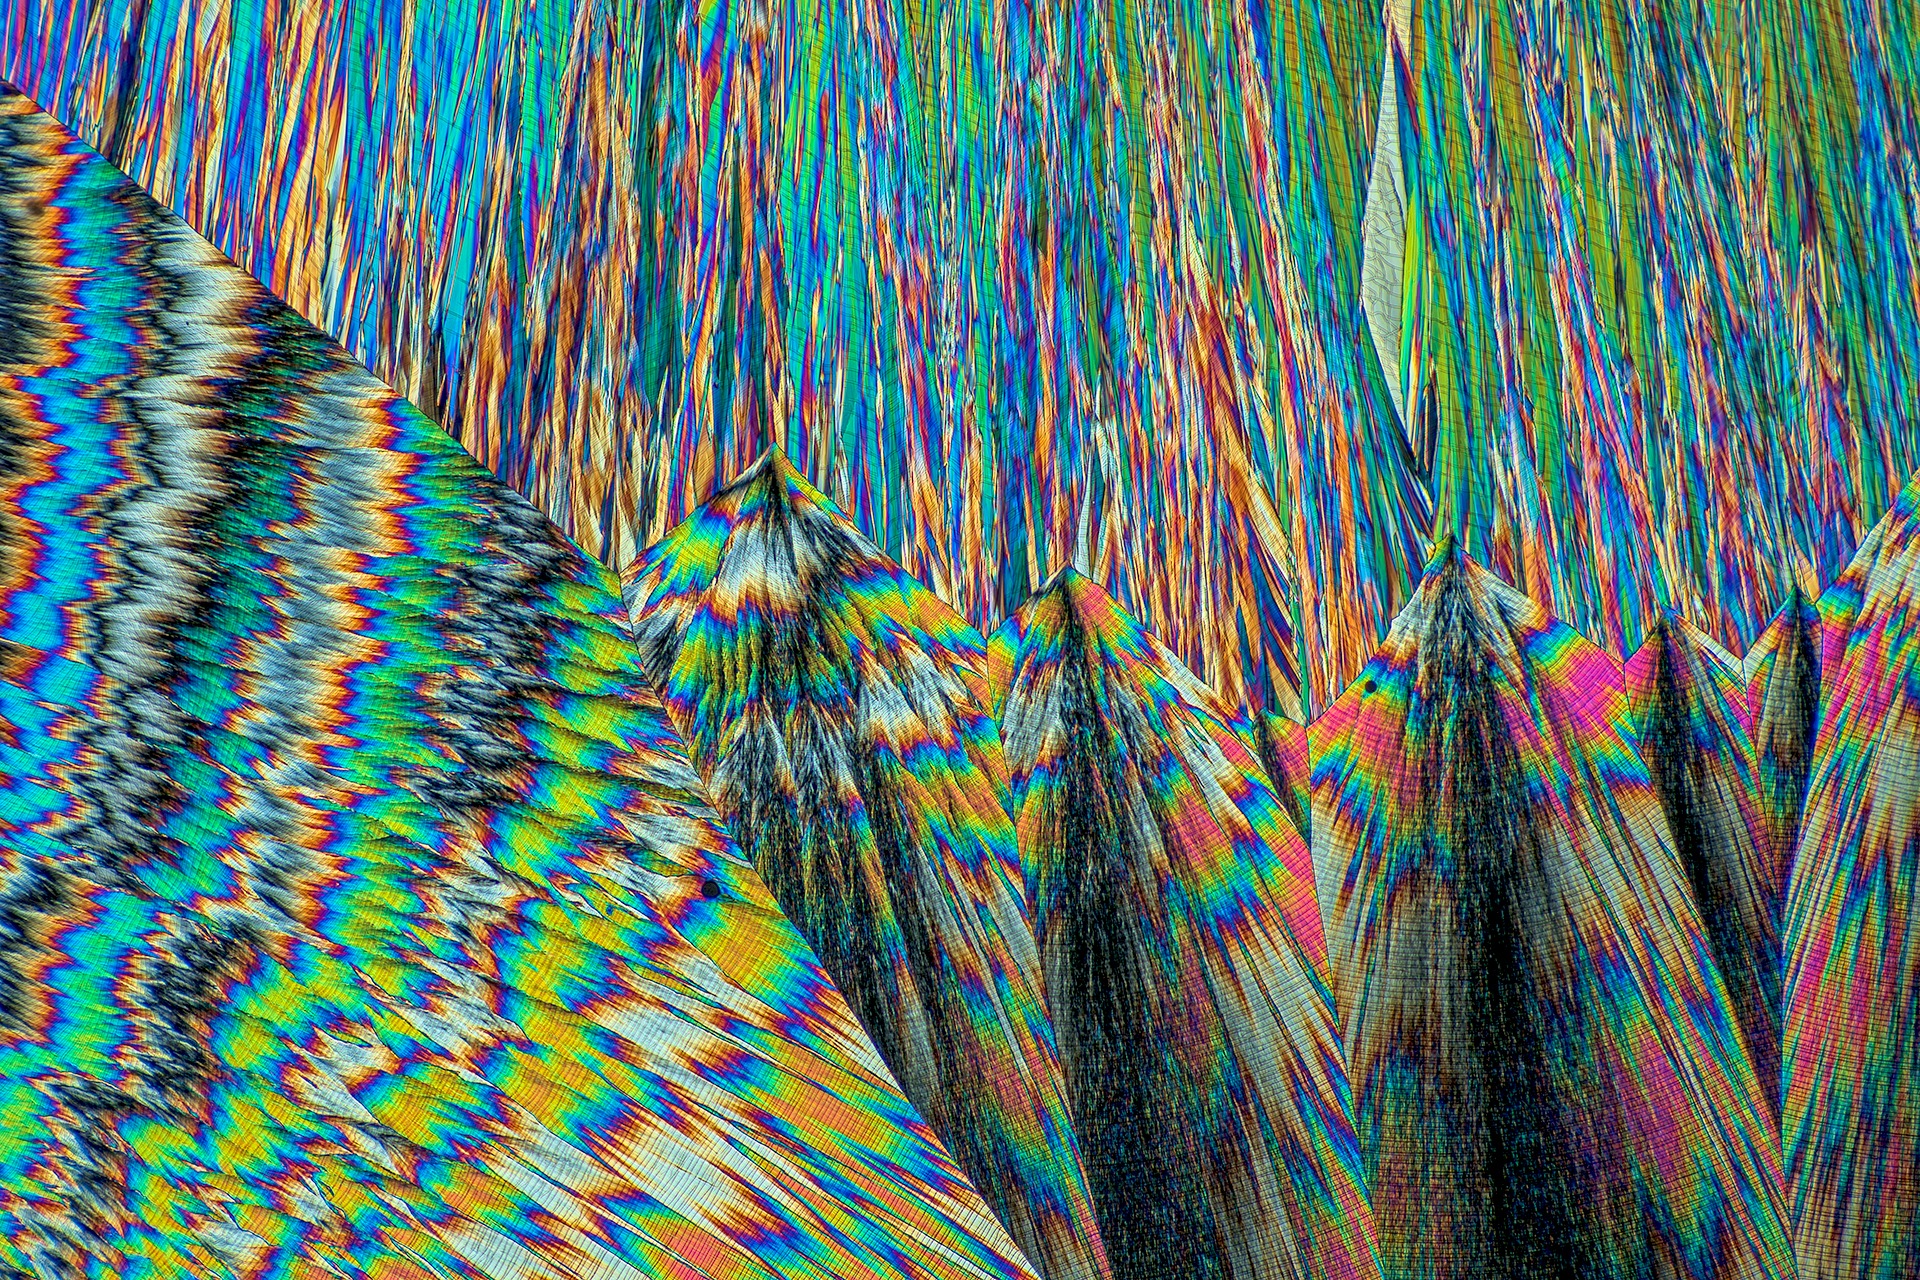 Hippursäure in einer Vergrößerung von 250:1, Mikro Kristall im polarisierten Licht.